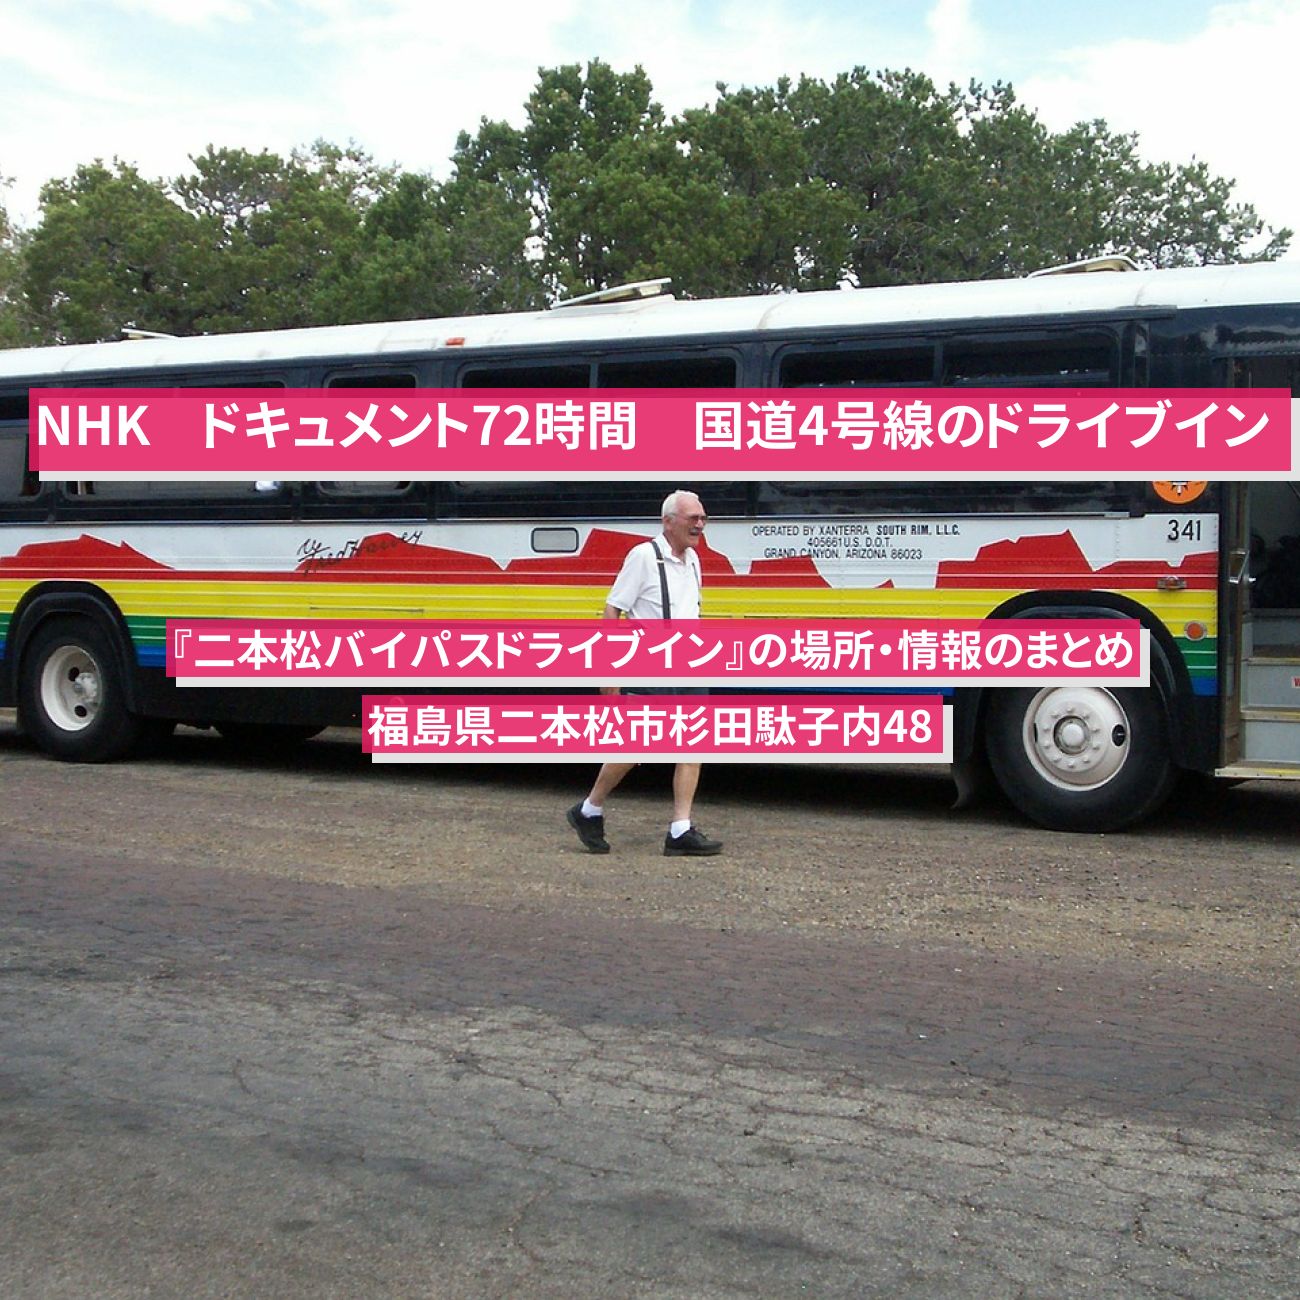 【NHK ドキュメント72時間】国道4号線 福島のドライブイン『二本松バイパスドライブイン』の場所・情報のまとめ